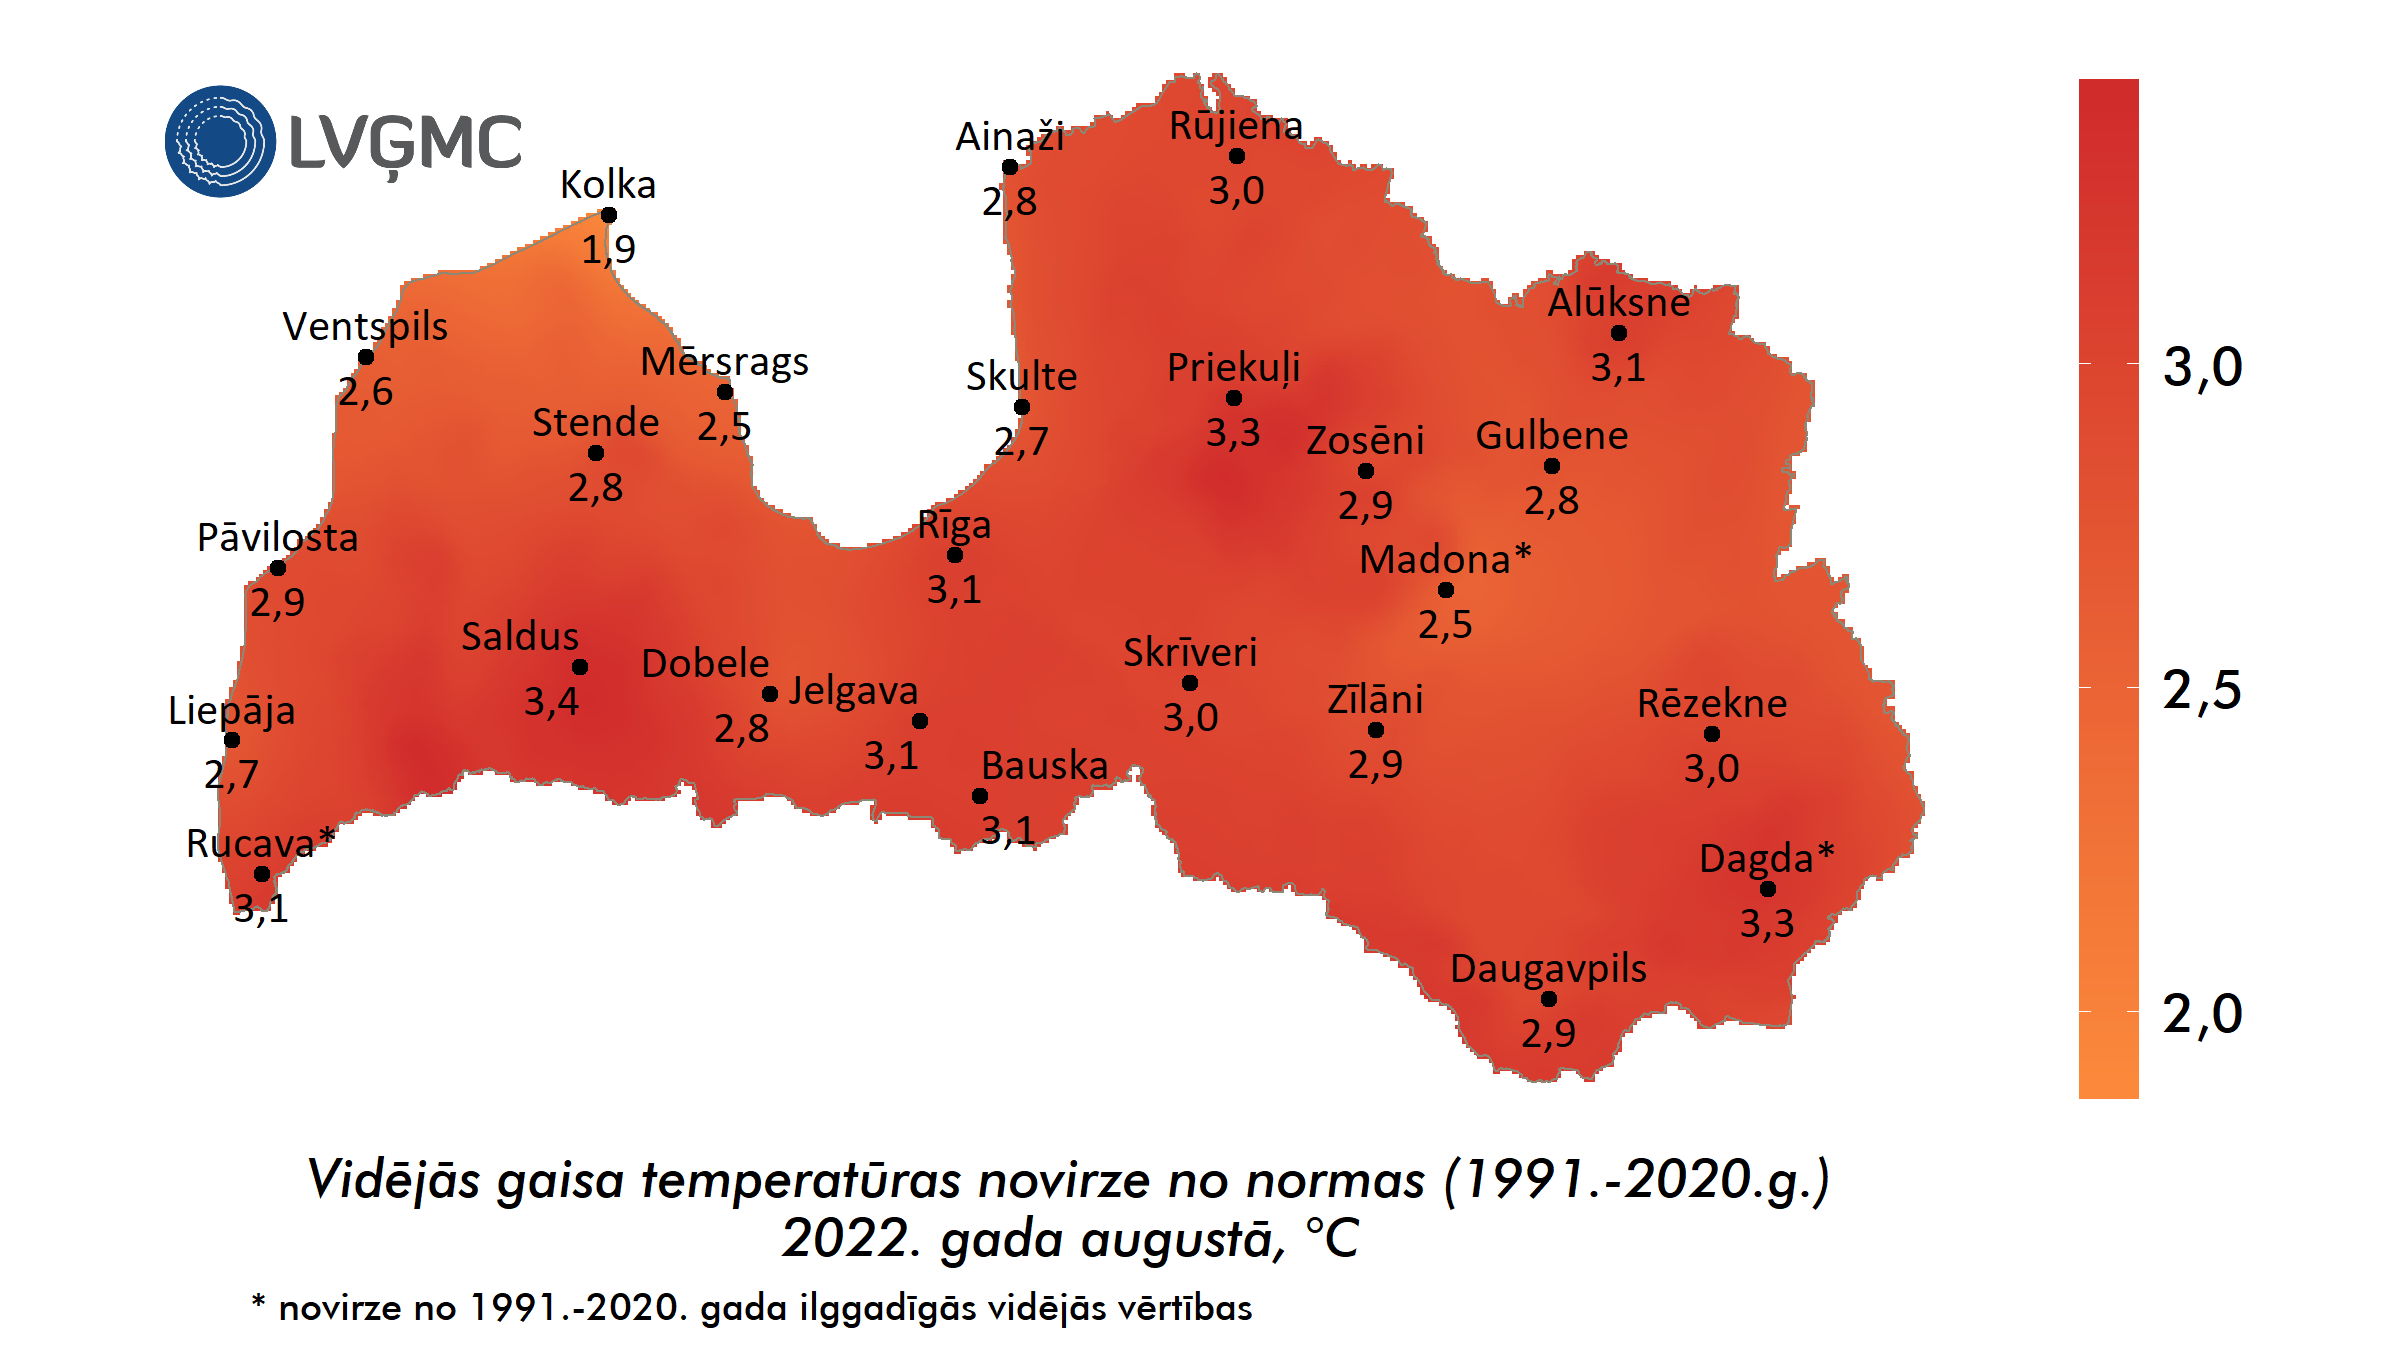 Vidējās gaisa temperatūras novirze no normas 2022. gada augustā, °C 